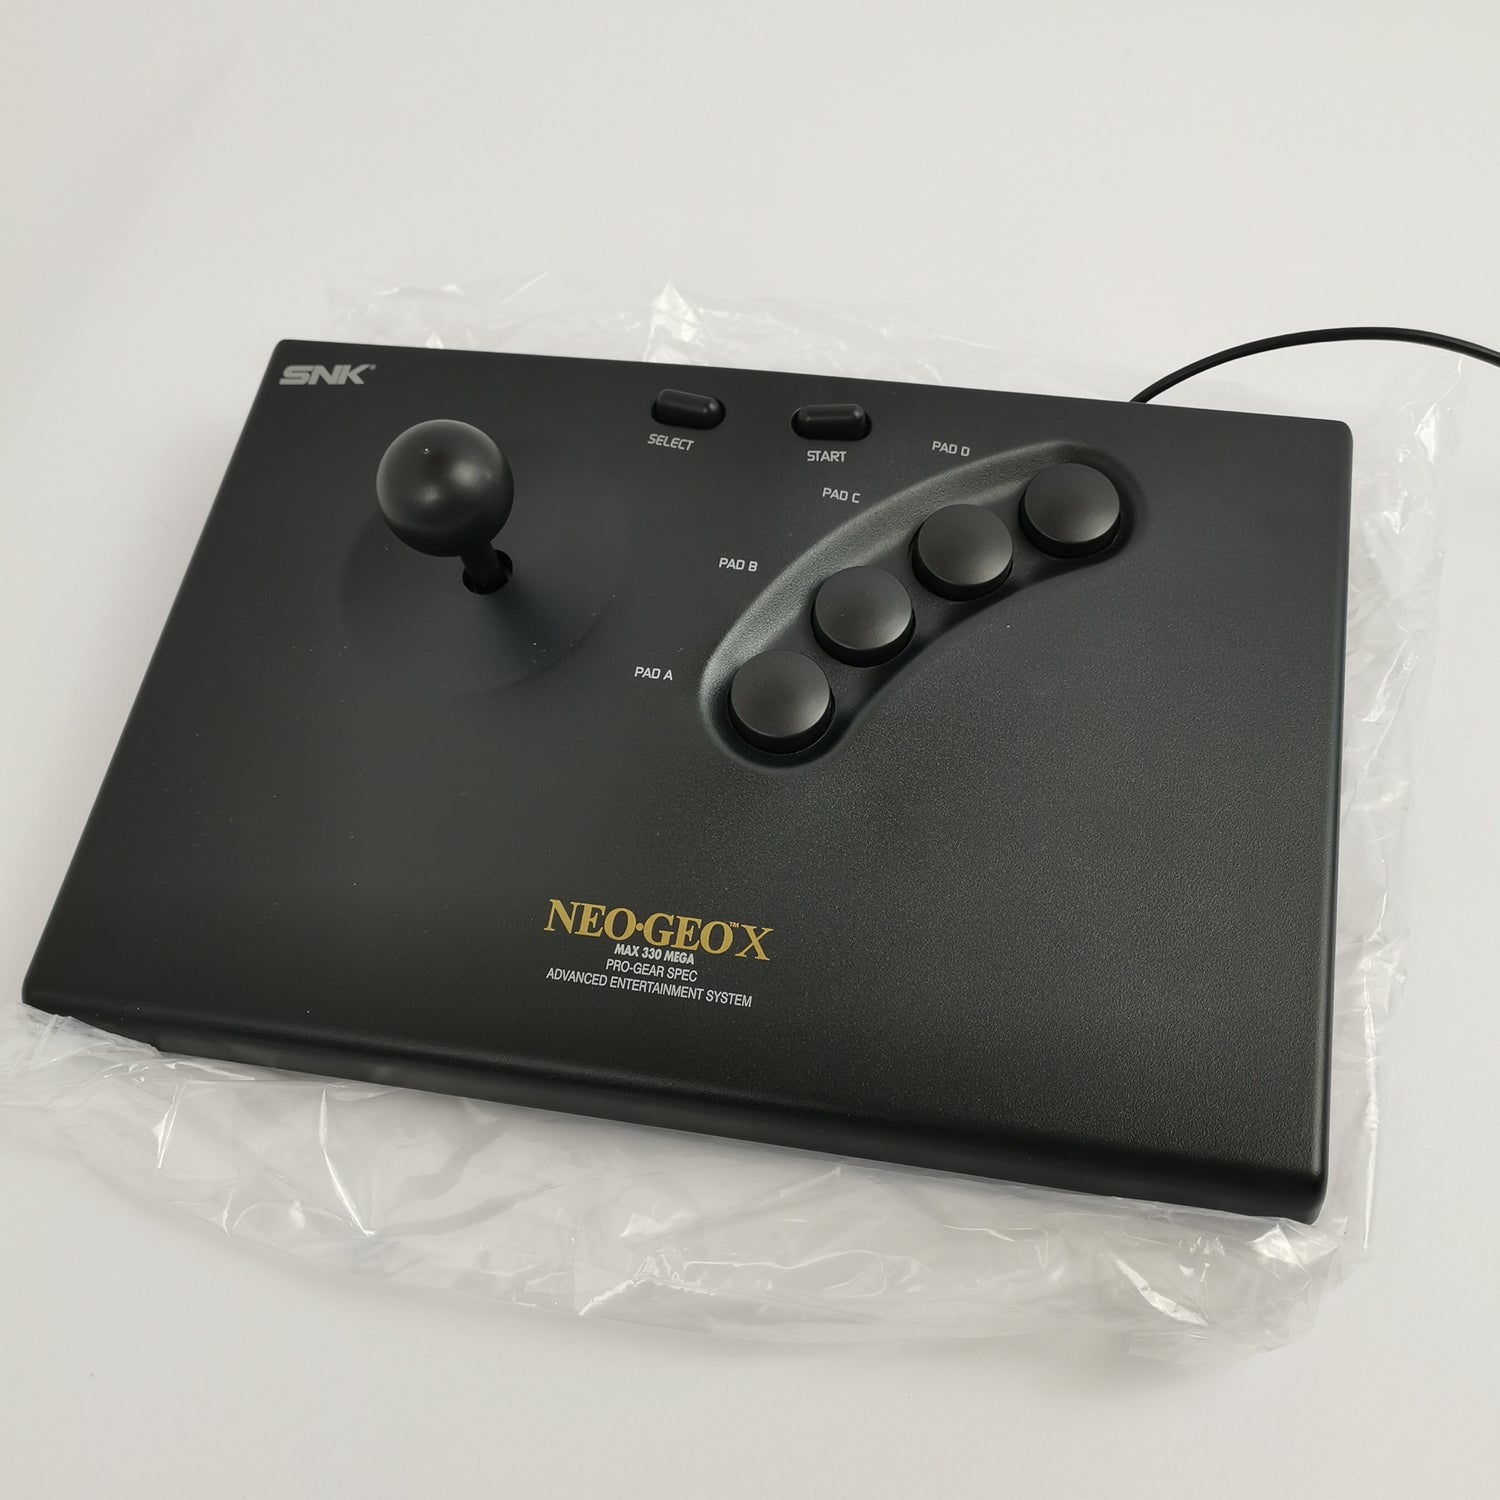 SNK Neo Geo X Gold Limited Edition | Neogeo X Station mit Arcade Stick, Handheld